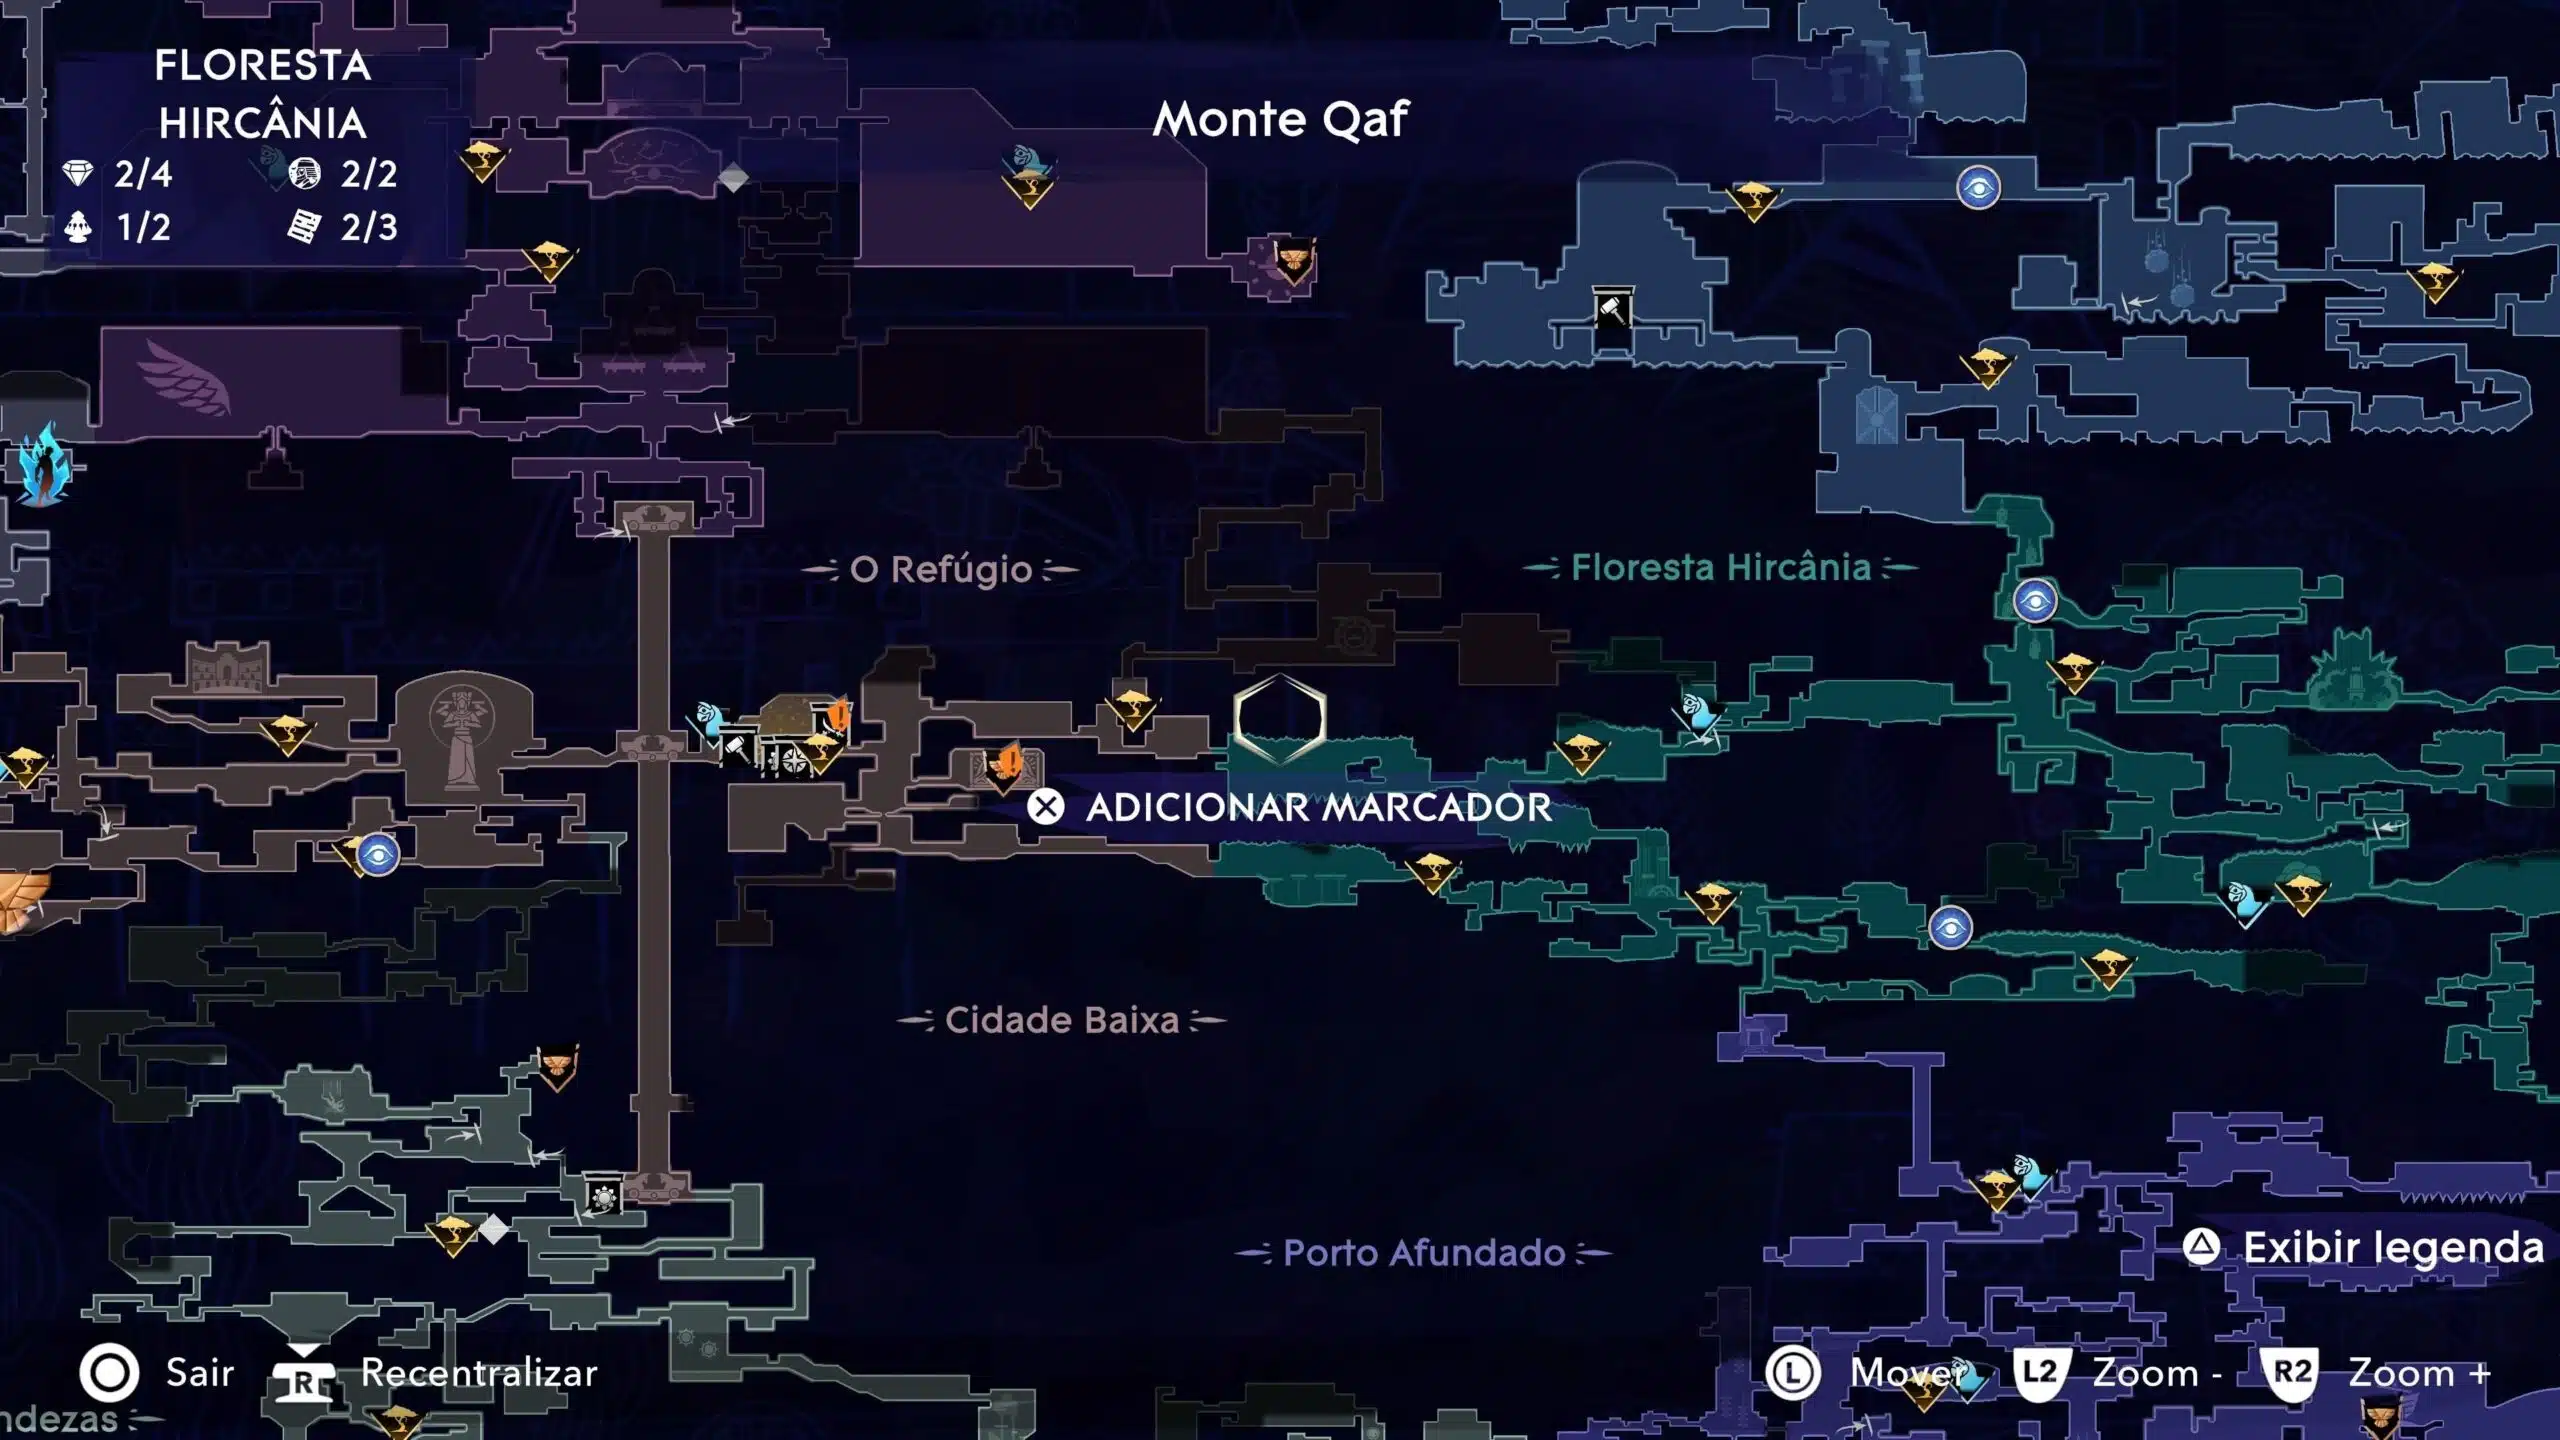 Prince of Persia mapa cheio de localizações marcadas após a exploração e com diversas áreas de interesse em destaque